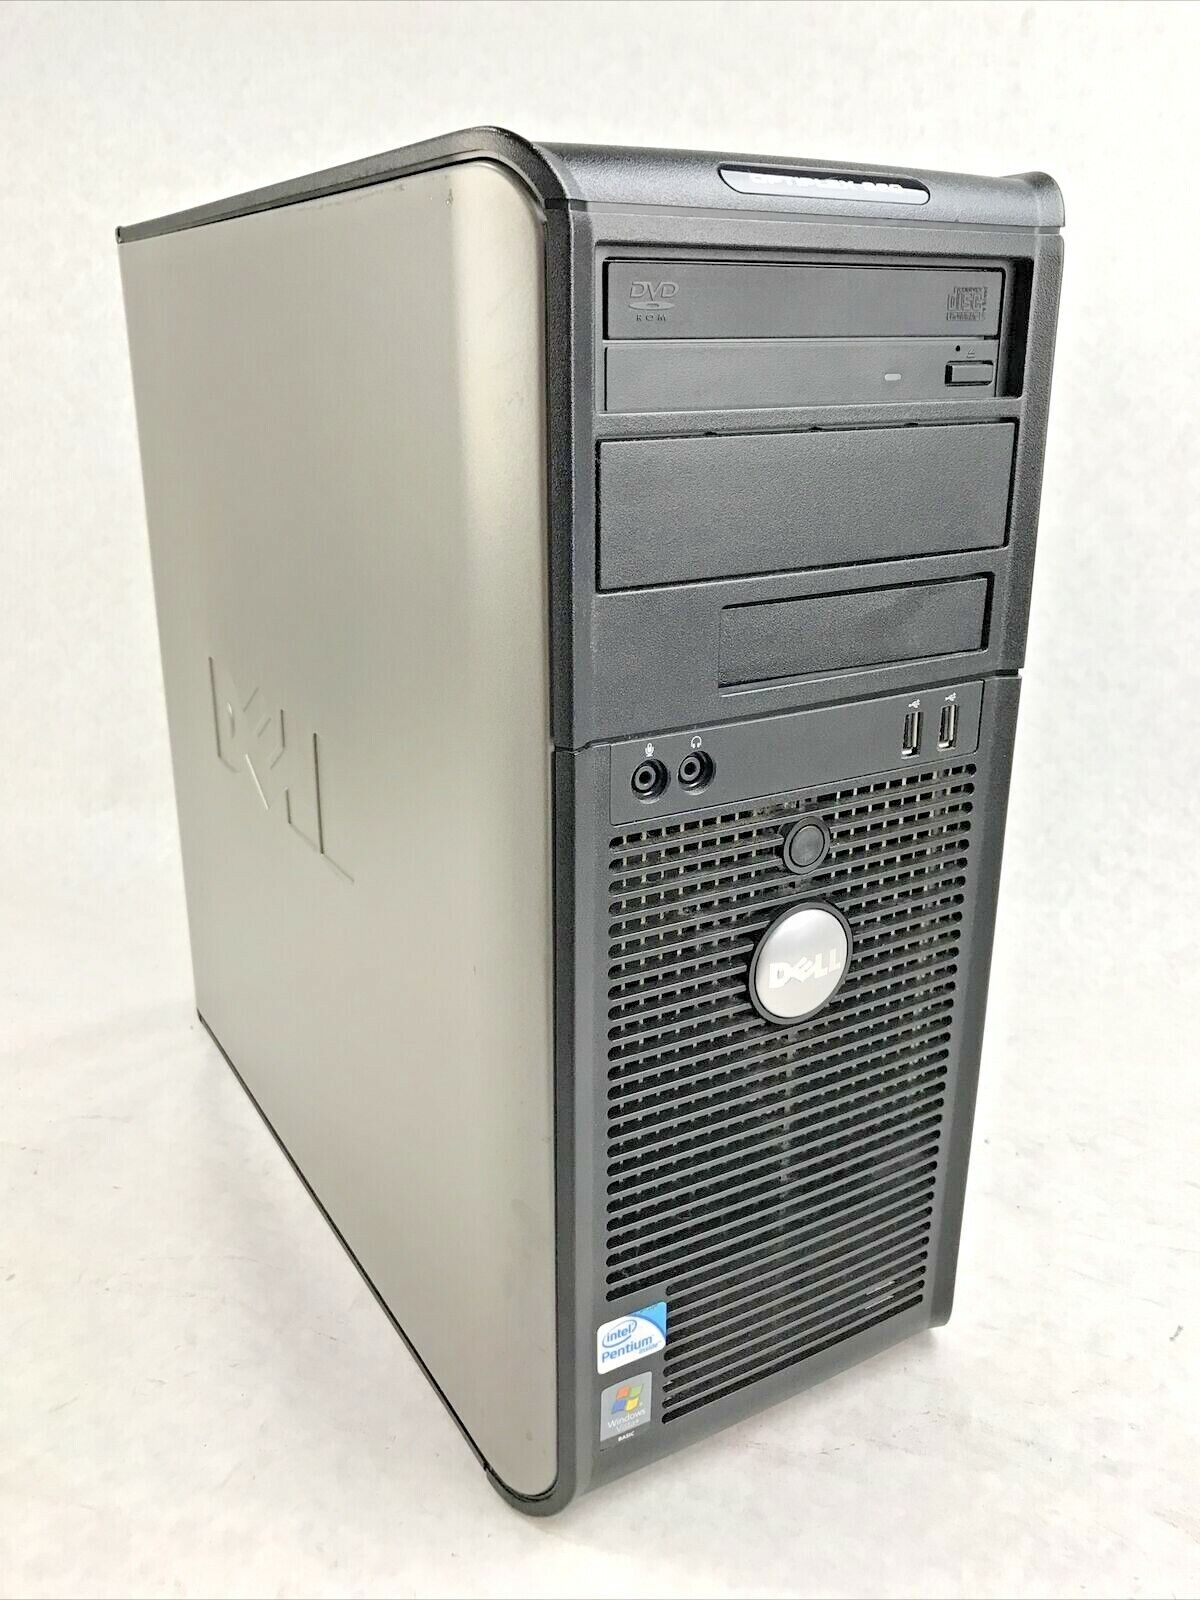 Dell Optiplex 360 Mini-Tower Intel Pentium E5200 2.50GHz 2GB RAM Win NO HD NO OS